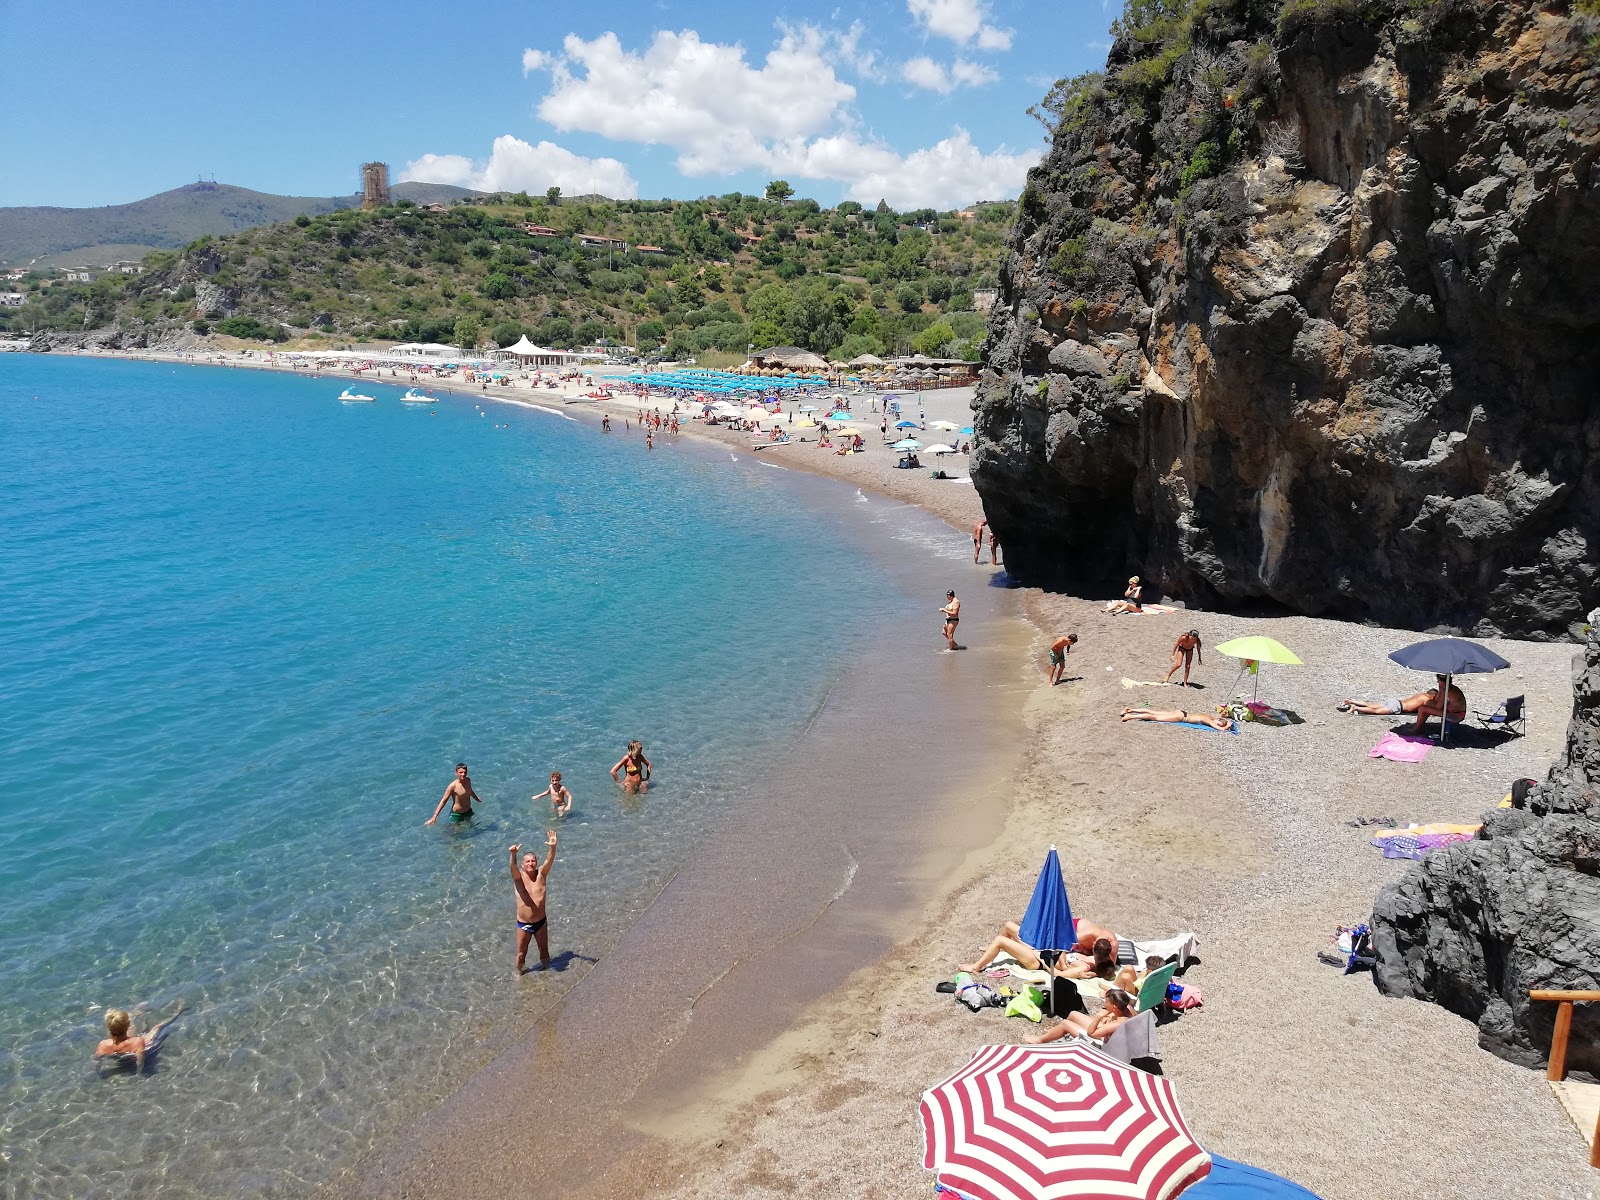 Spiaggia Lentiscelle'in fotoğrafı koyu i̇nce çakıl yüzey ile